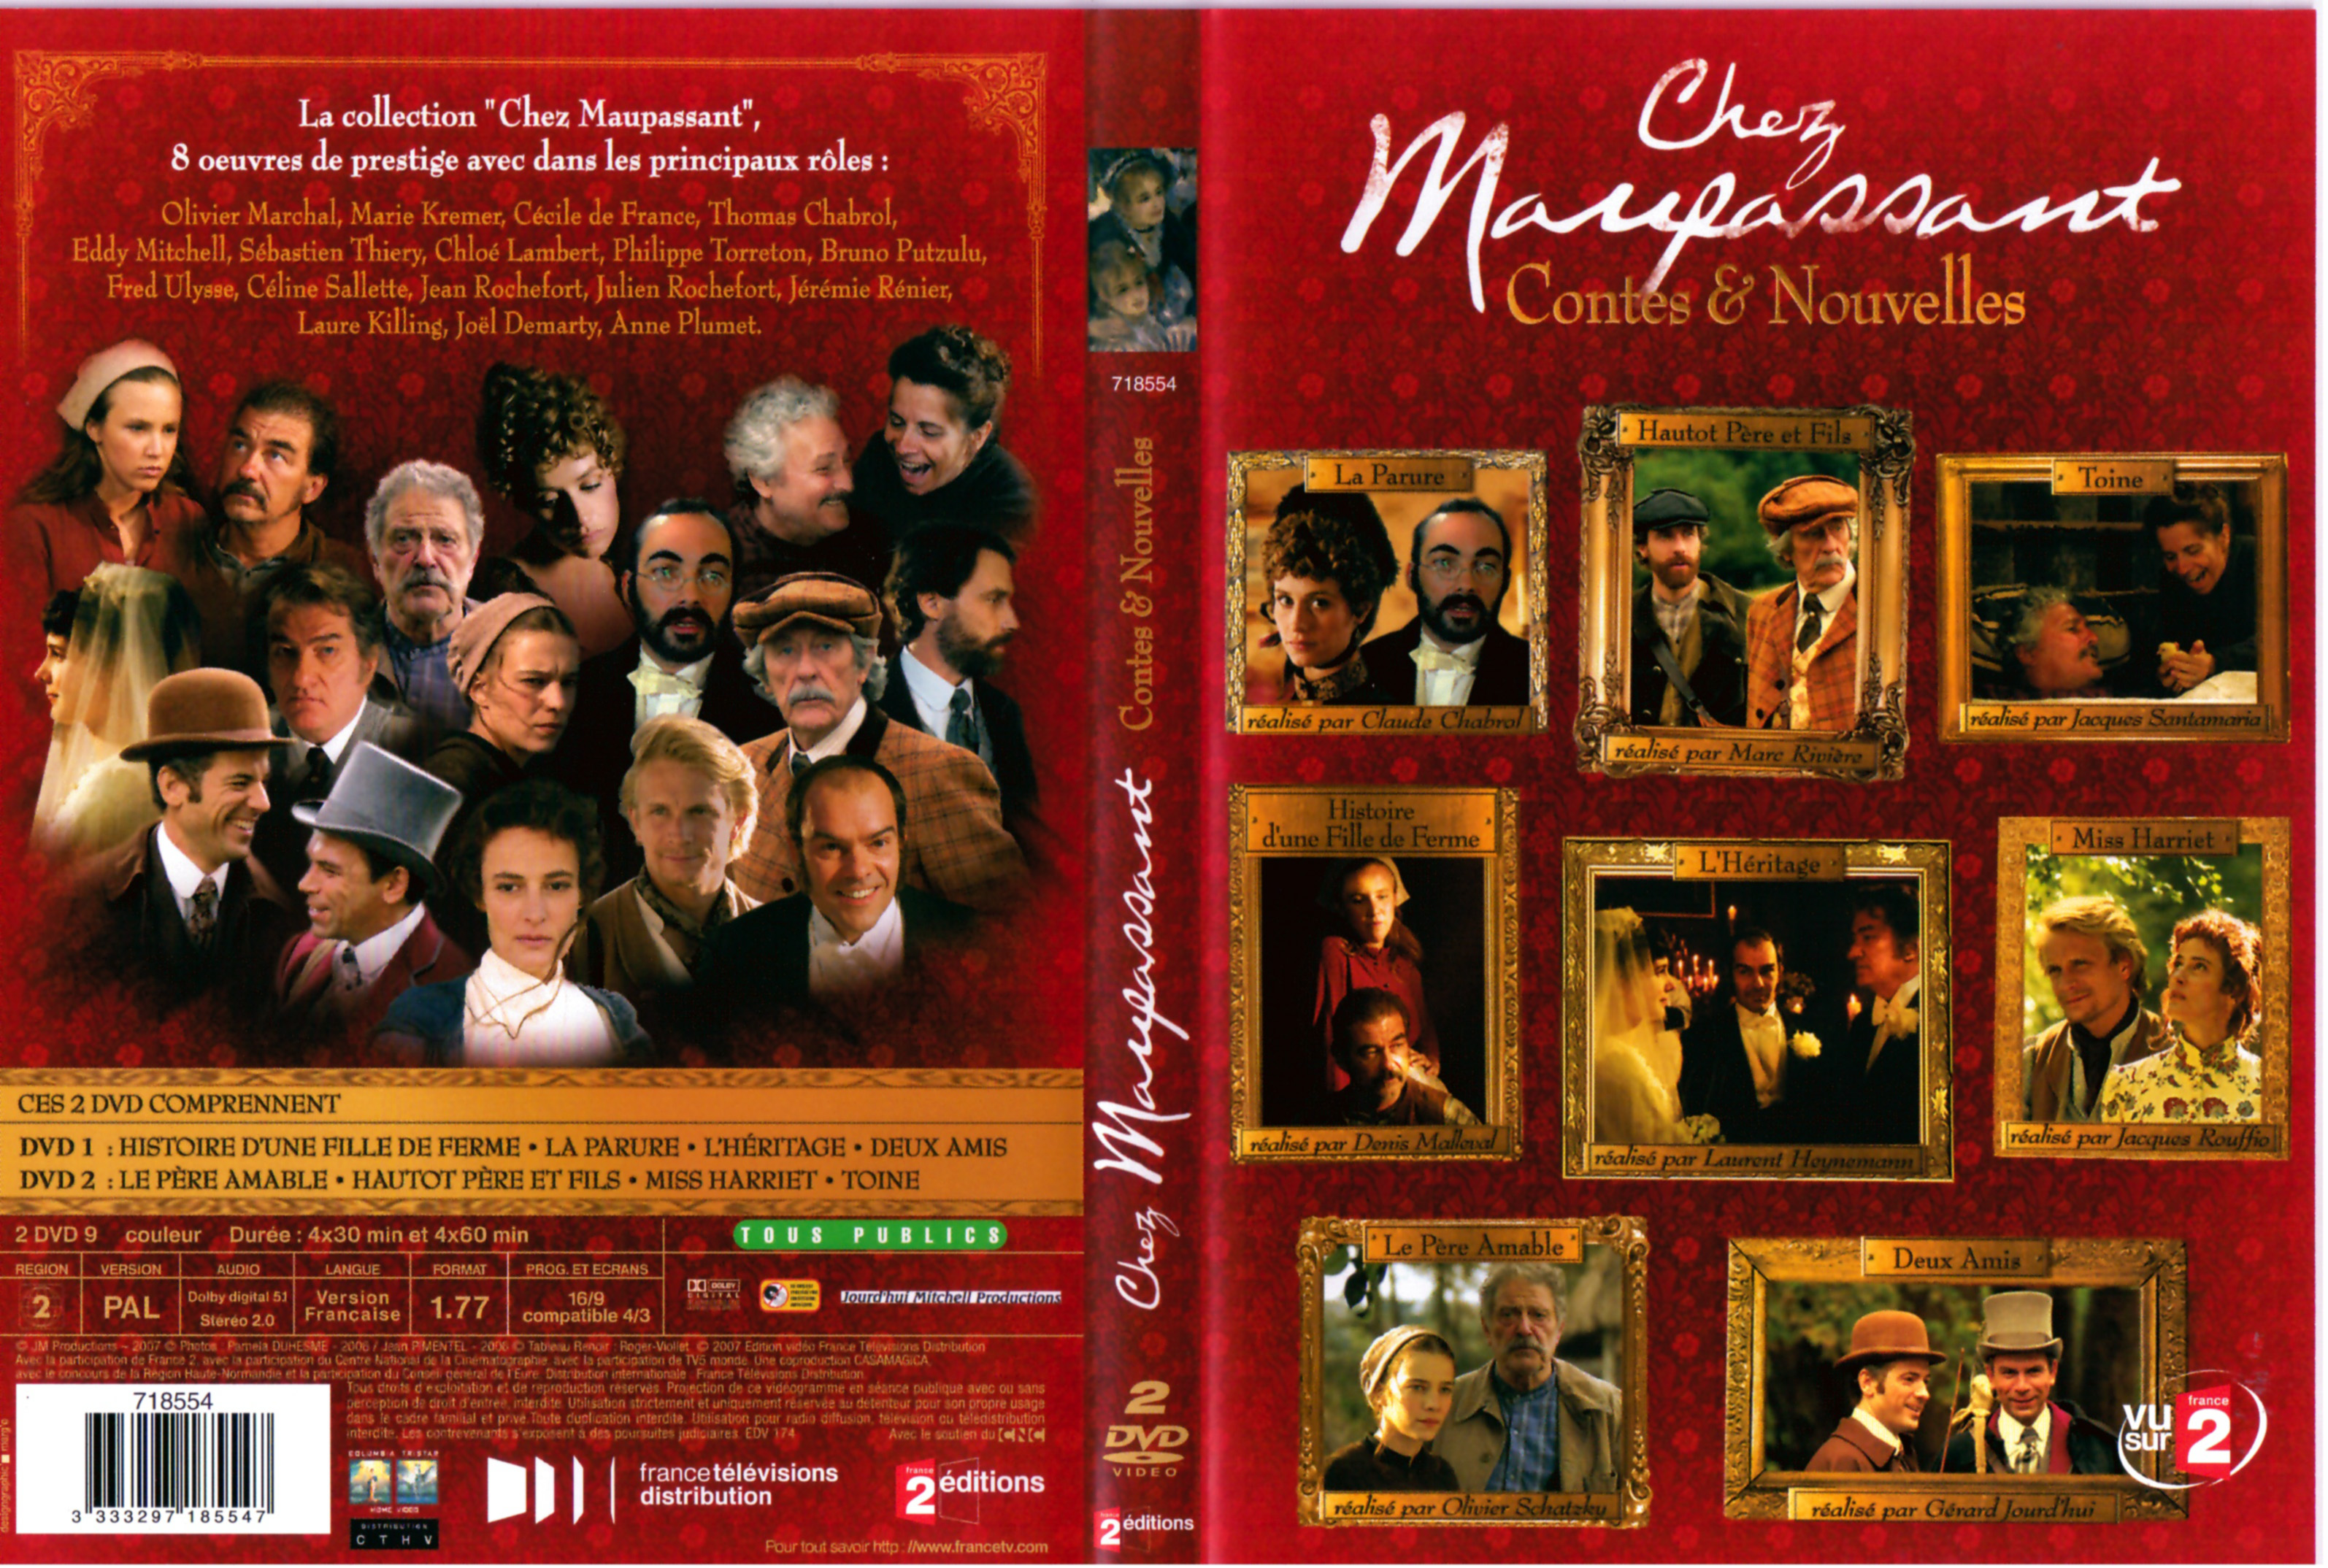 Jaquette DVD Chez Maupassant - Contes et Nouvelles Saison 1